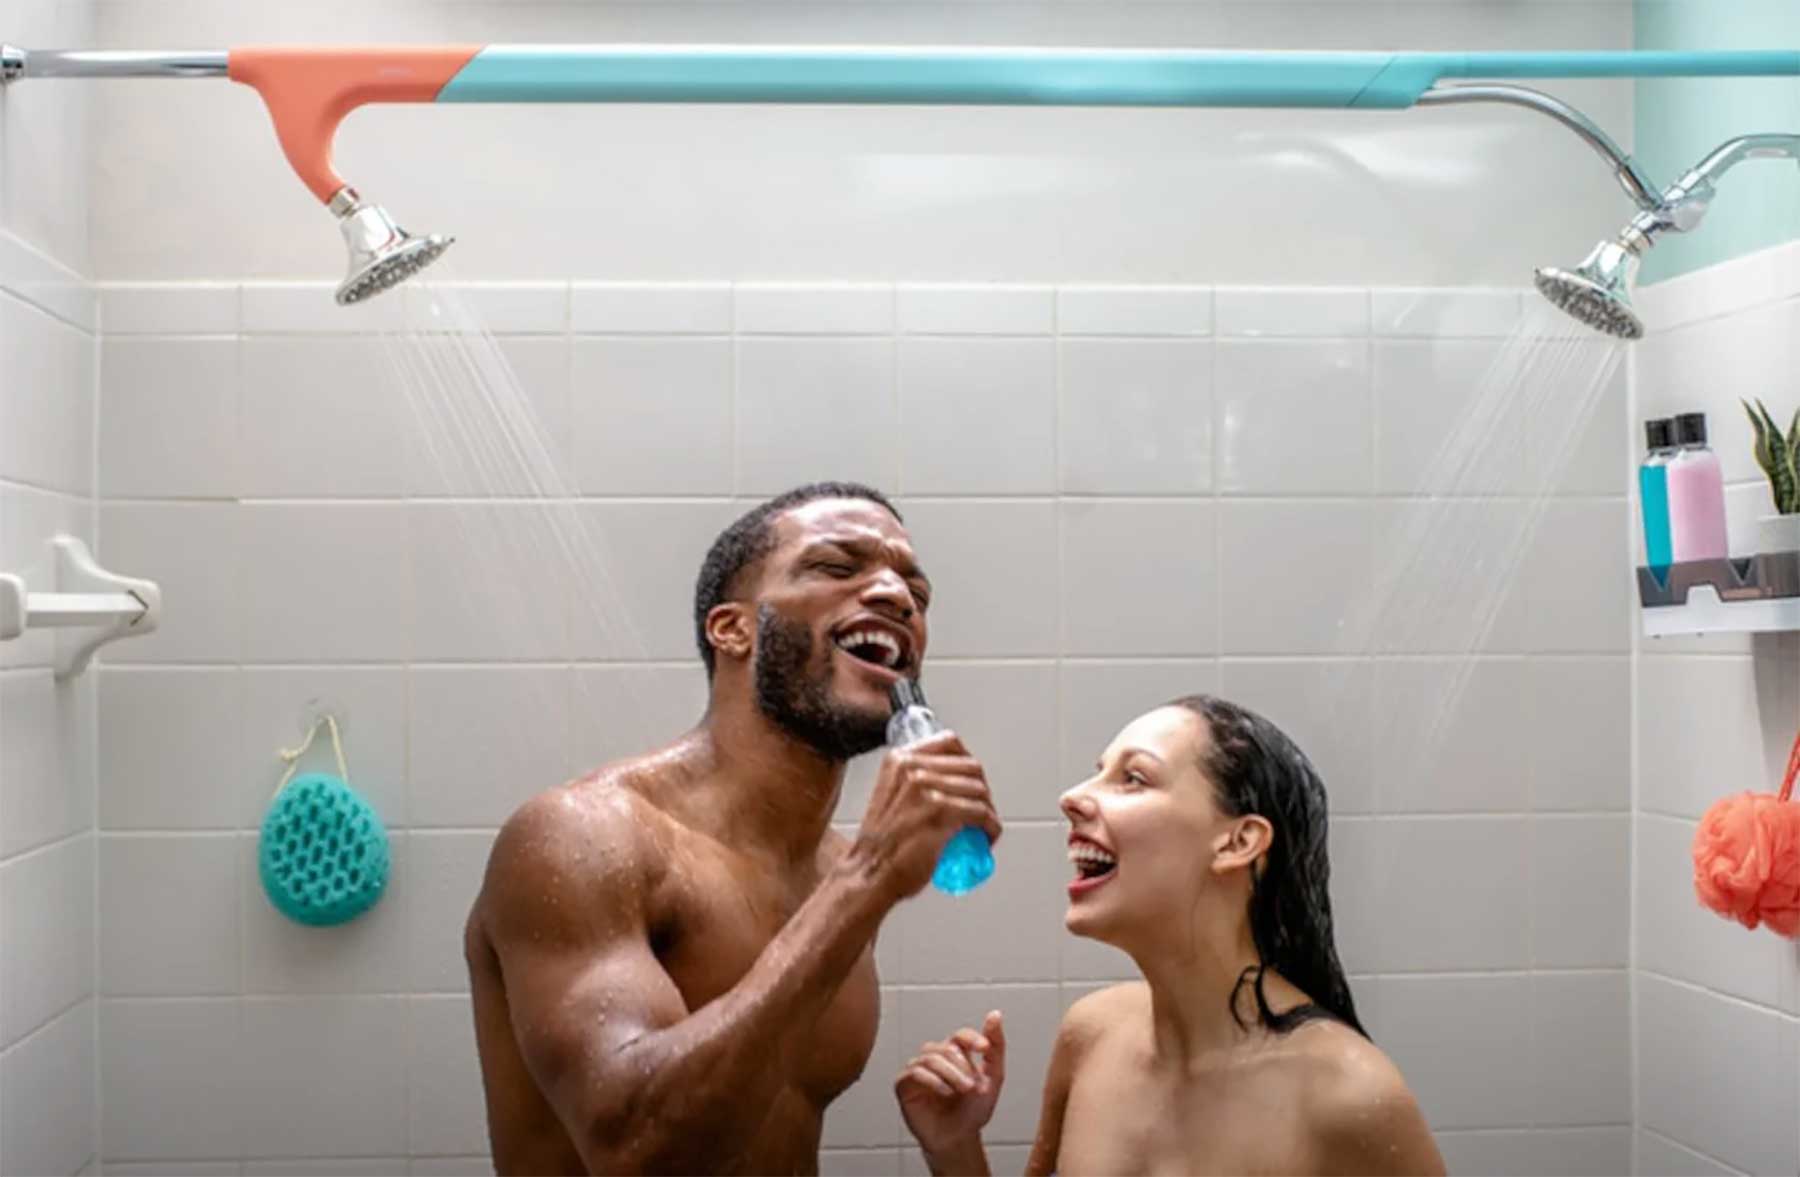 "Tandem Shower" schafft 2 Duschköpfe für gemeinsames Duschen Tandem-Shower 